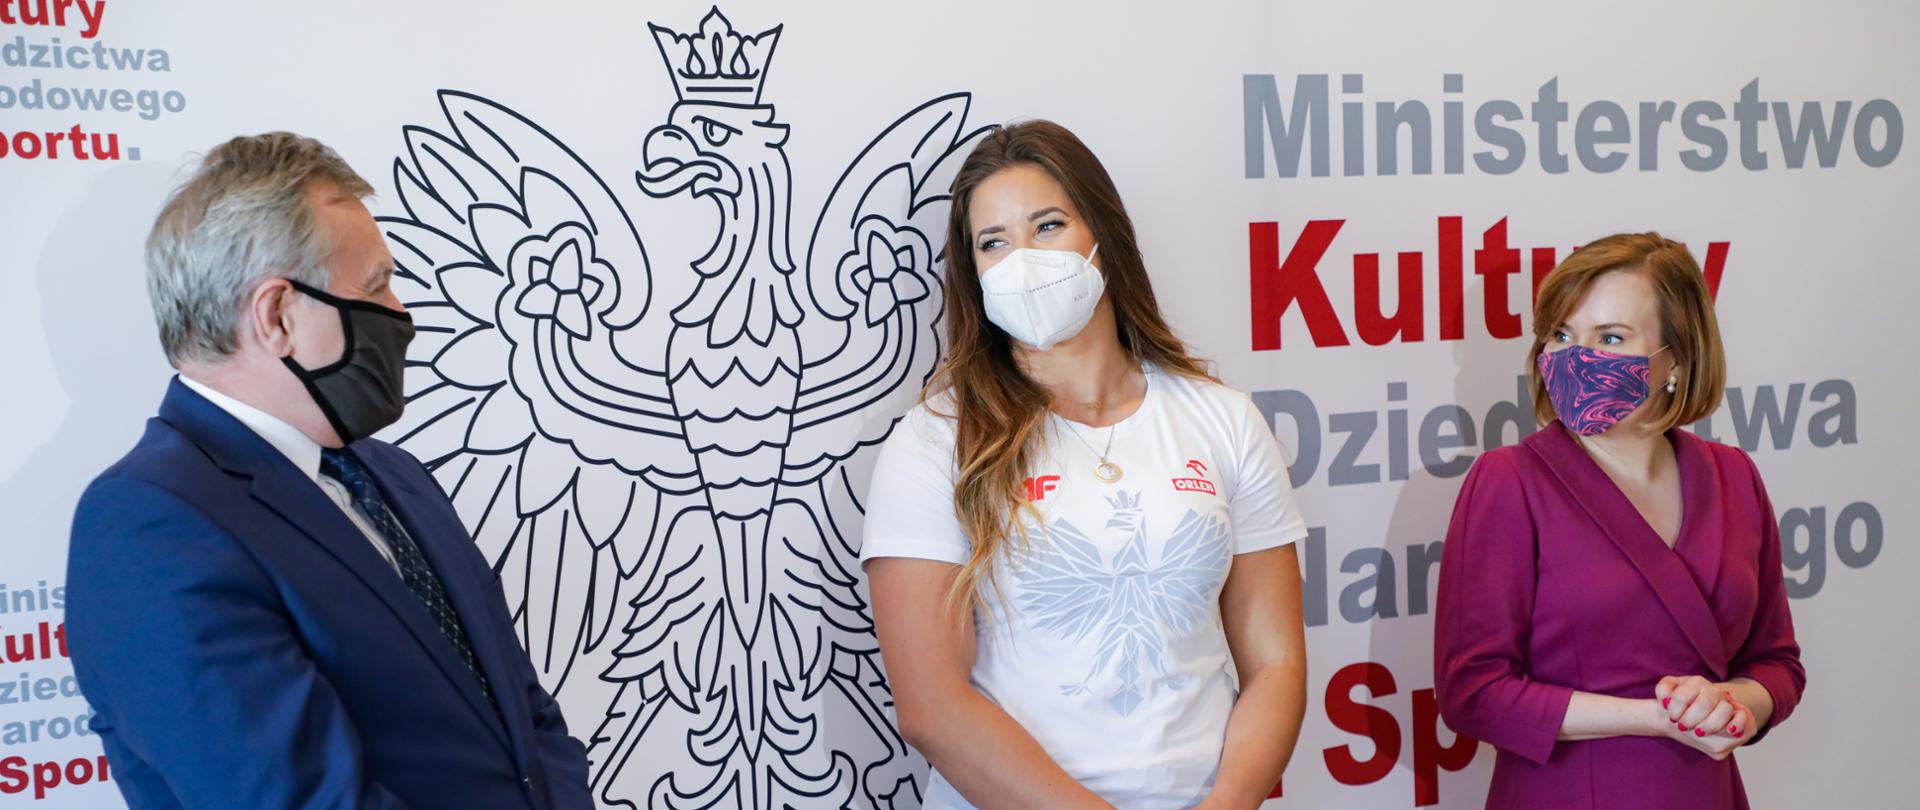 Rekordzistka Polski Maria Andrejczyk gotowa na kolejne wyzwania, fot. Danuta Matloch